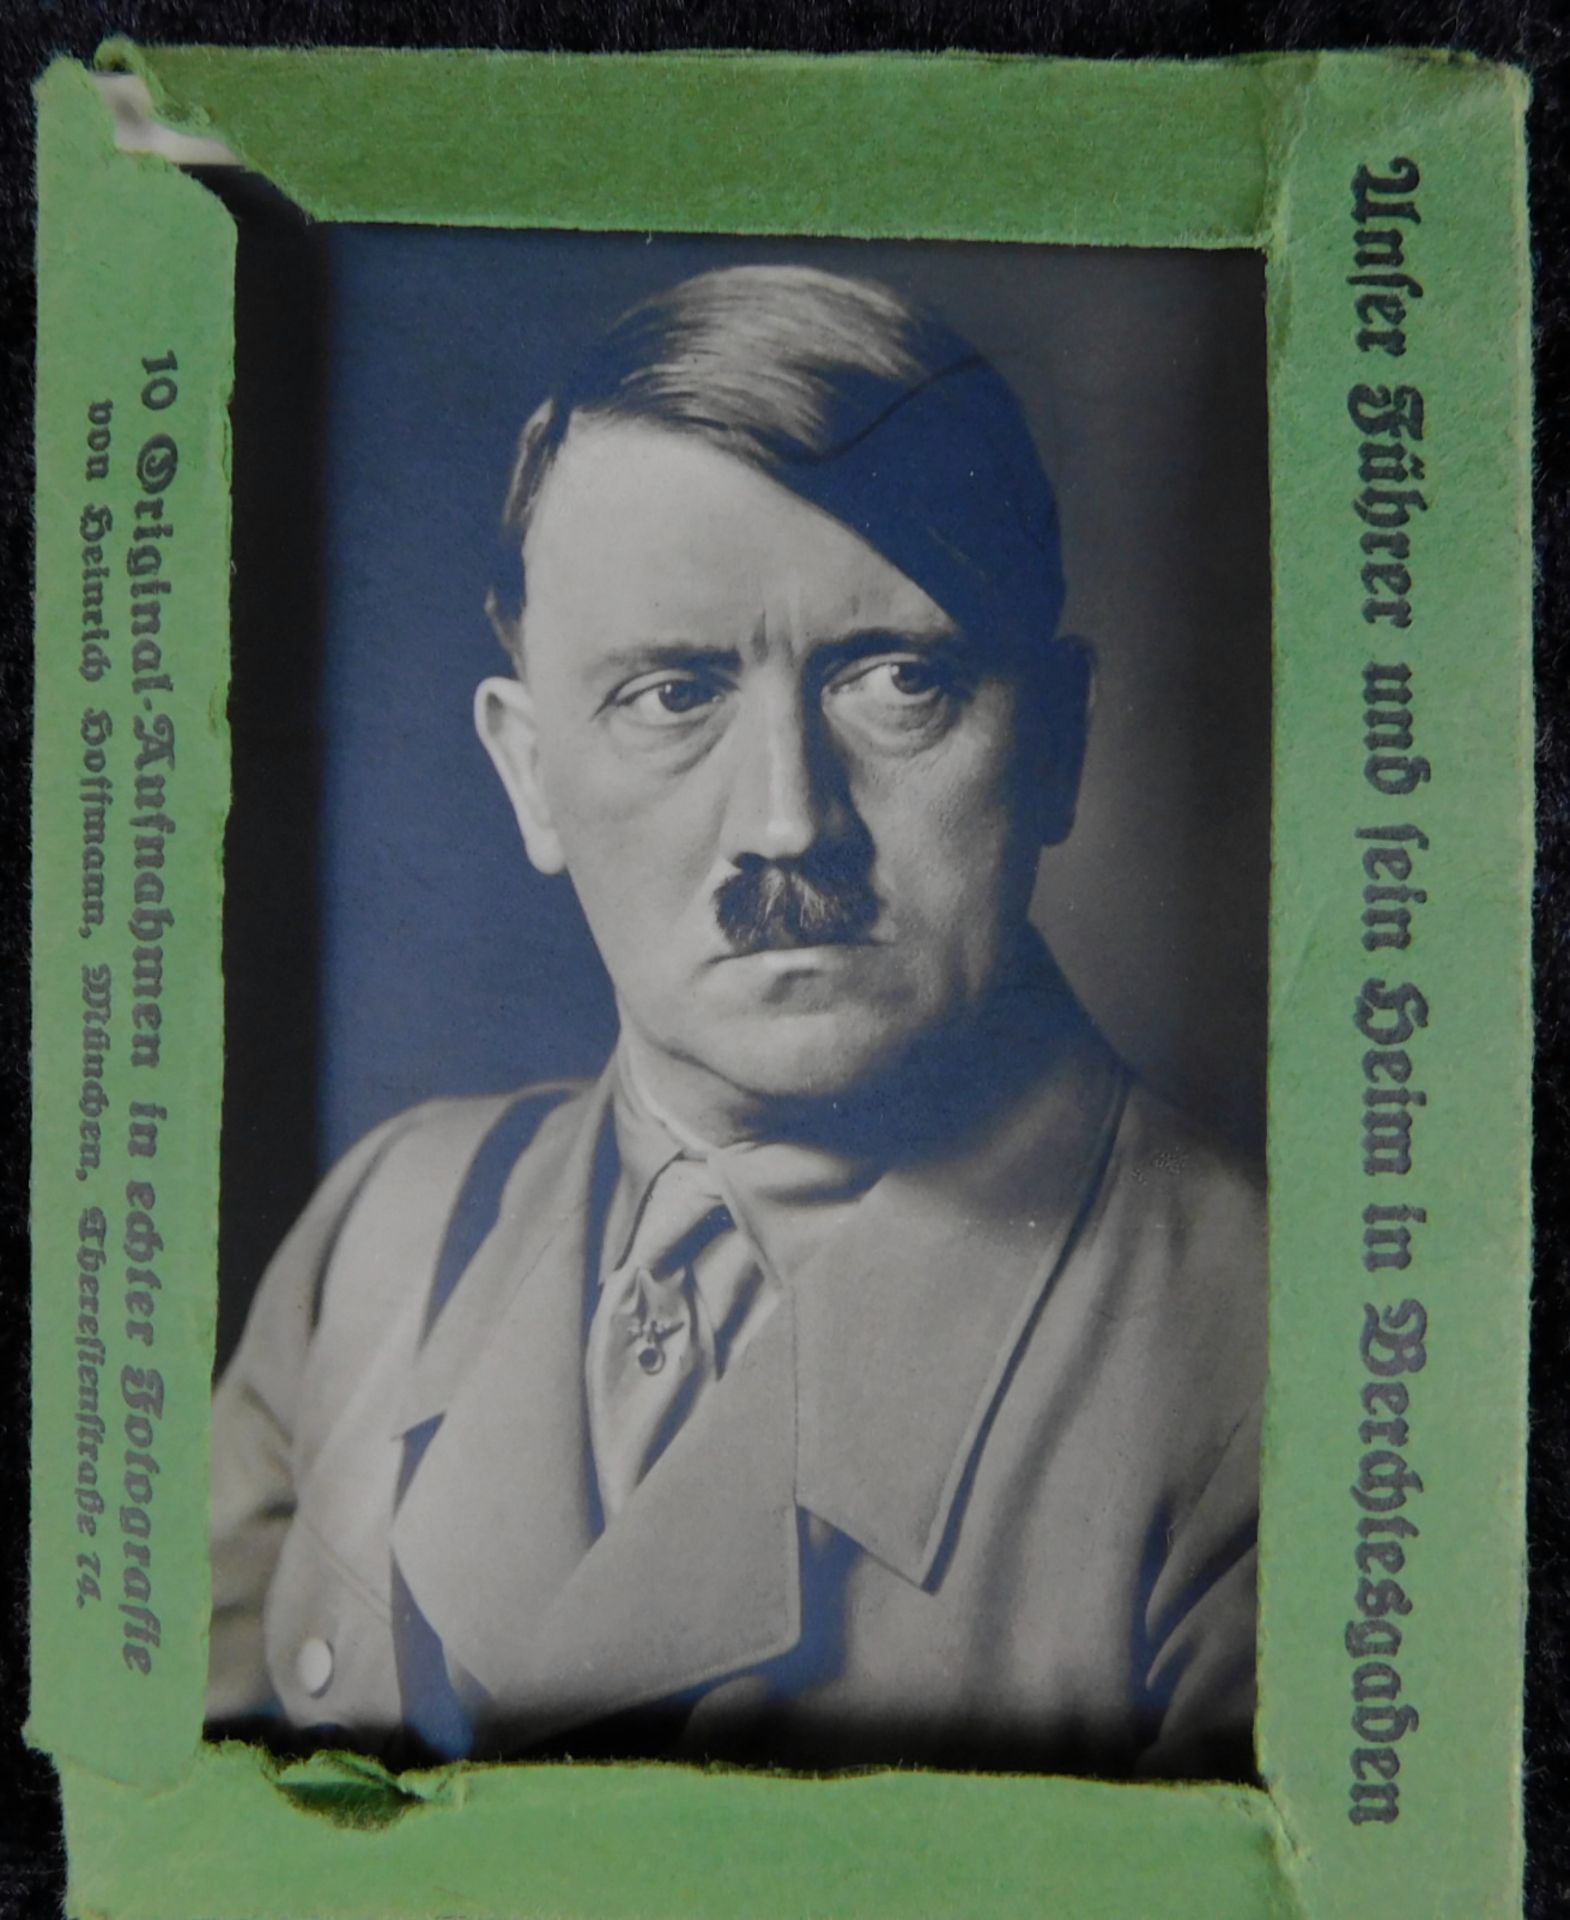 3. Reich, 10 Fotos Hitler Propaganda Heftchen, Unser Führer und sein Heim in Berchtesgaden<